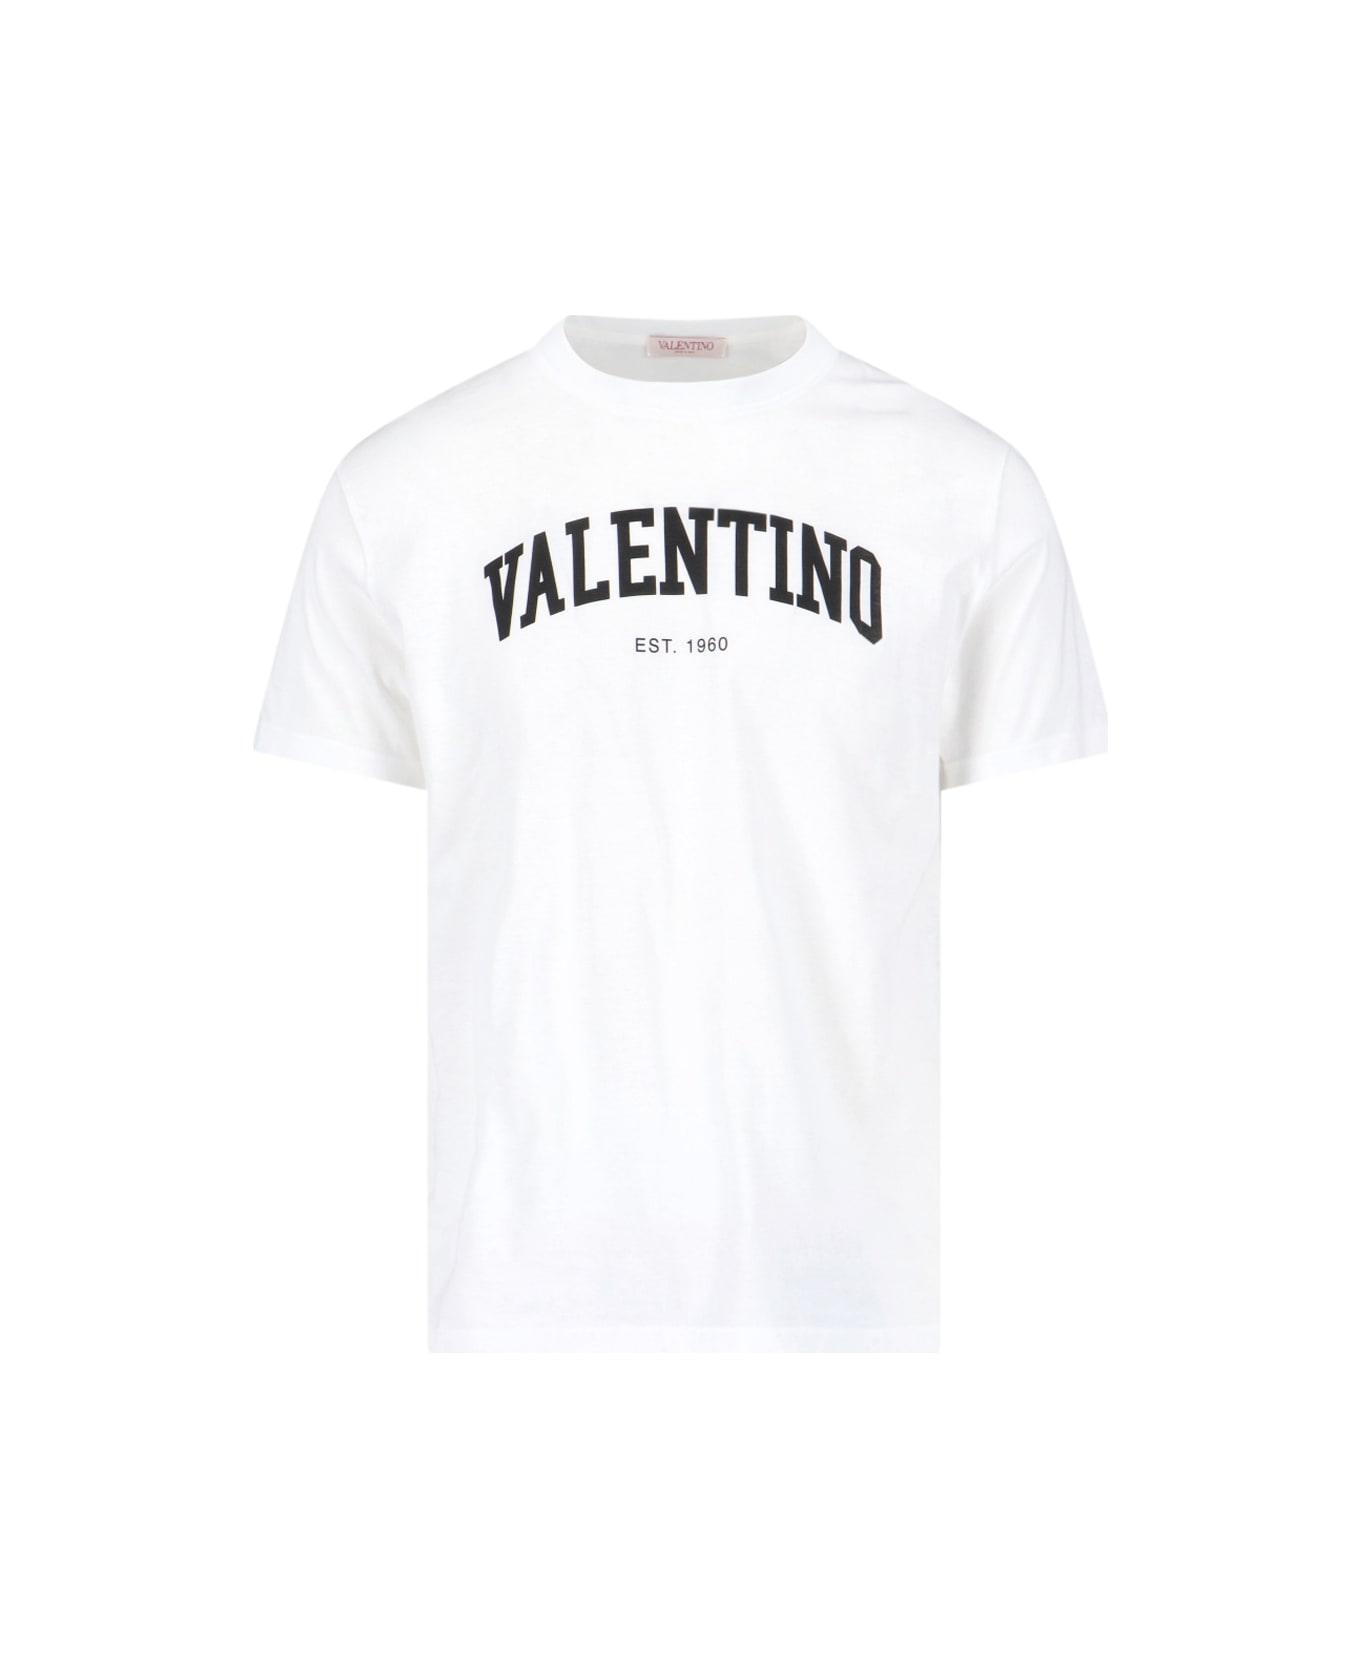 Valentino T-Shirt - White